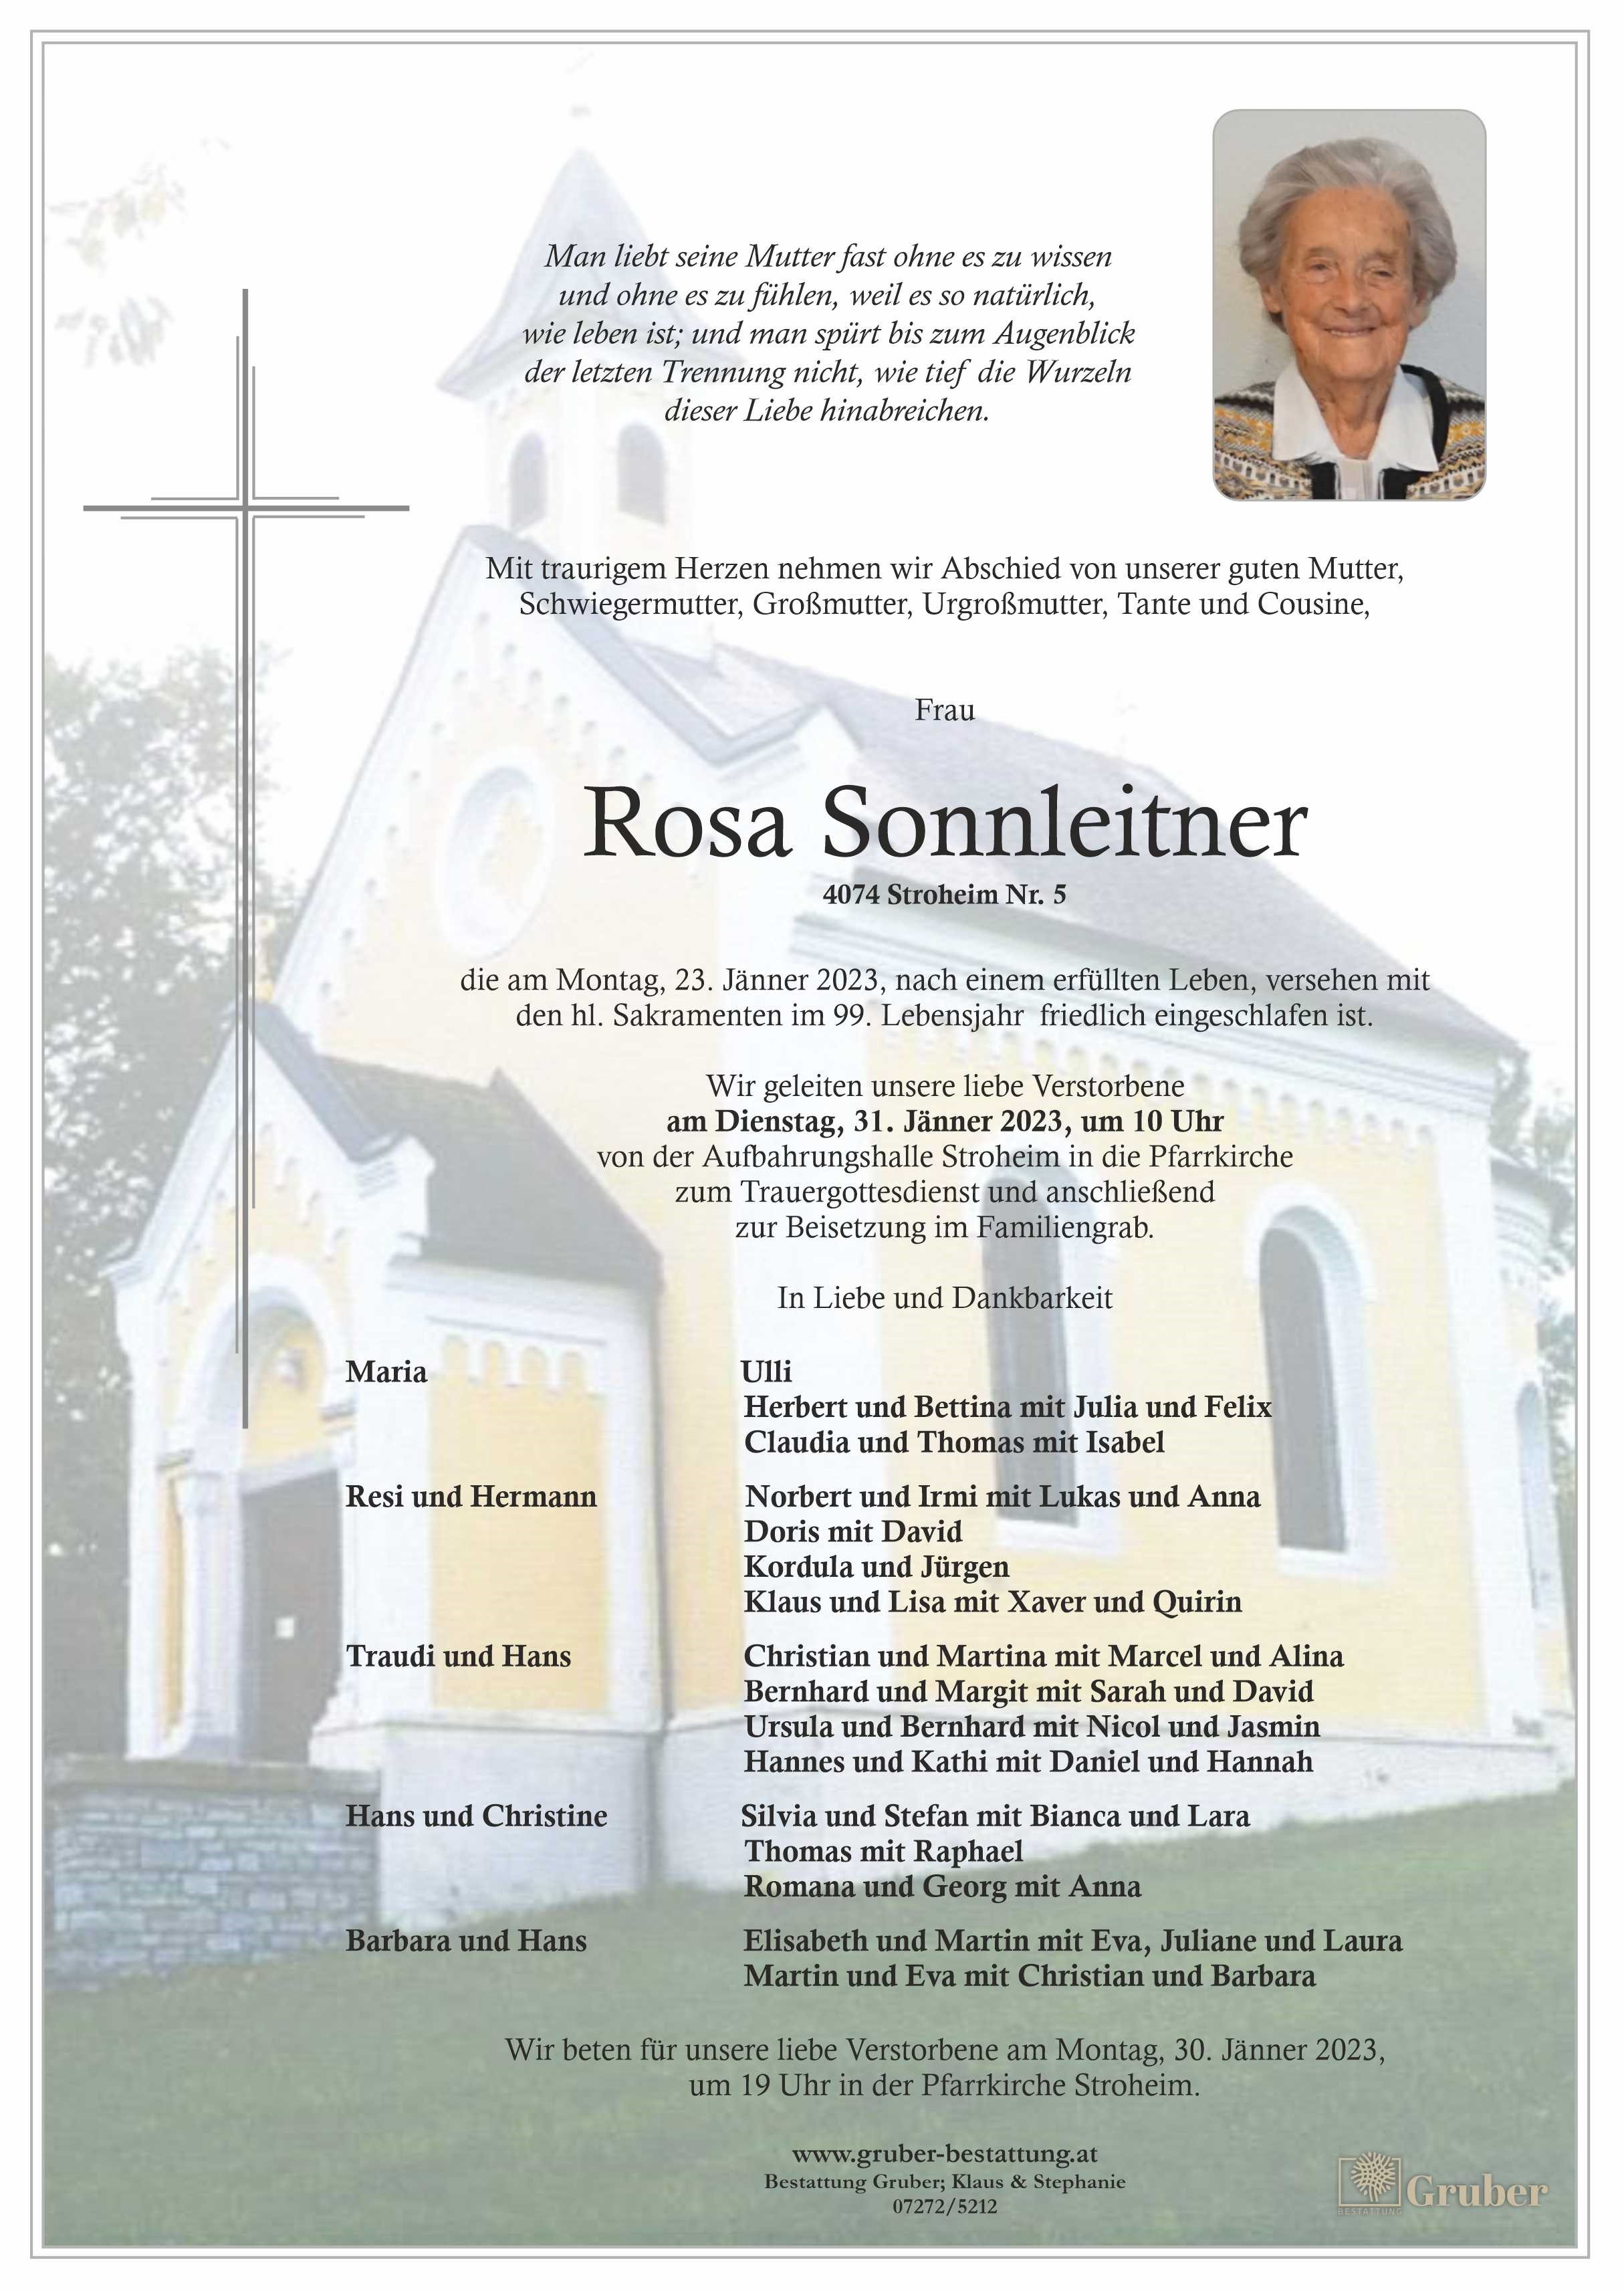 Rosa Sonnleitner (Stroheim)